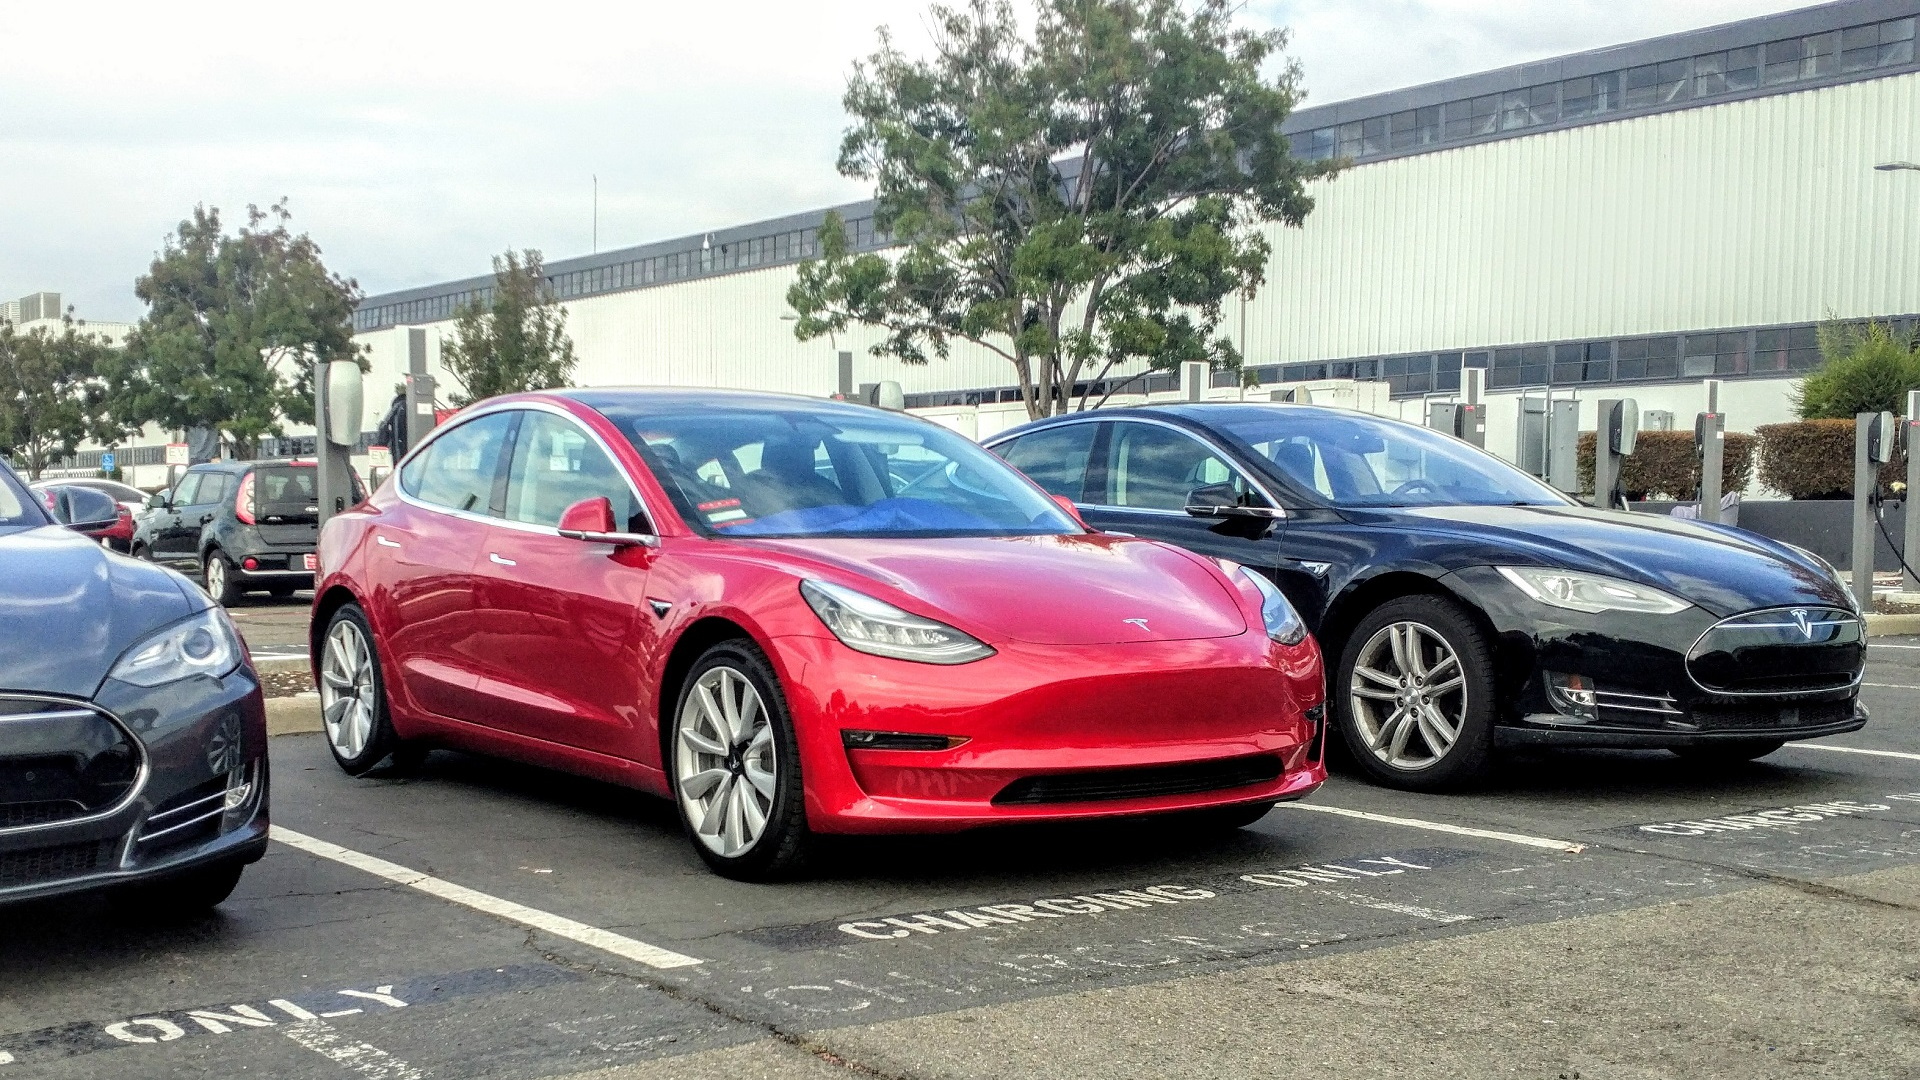 2017 Tesla Model 3 in Tesla assembly plant parking lot, Fremont, CA, November 2017